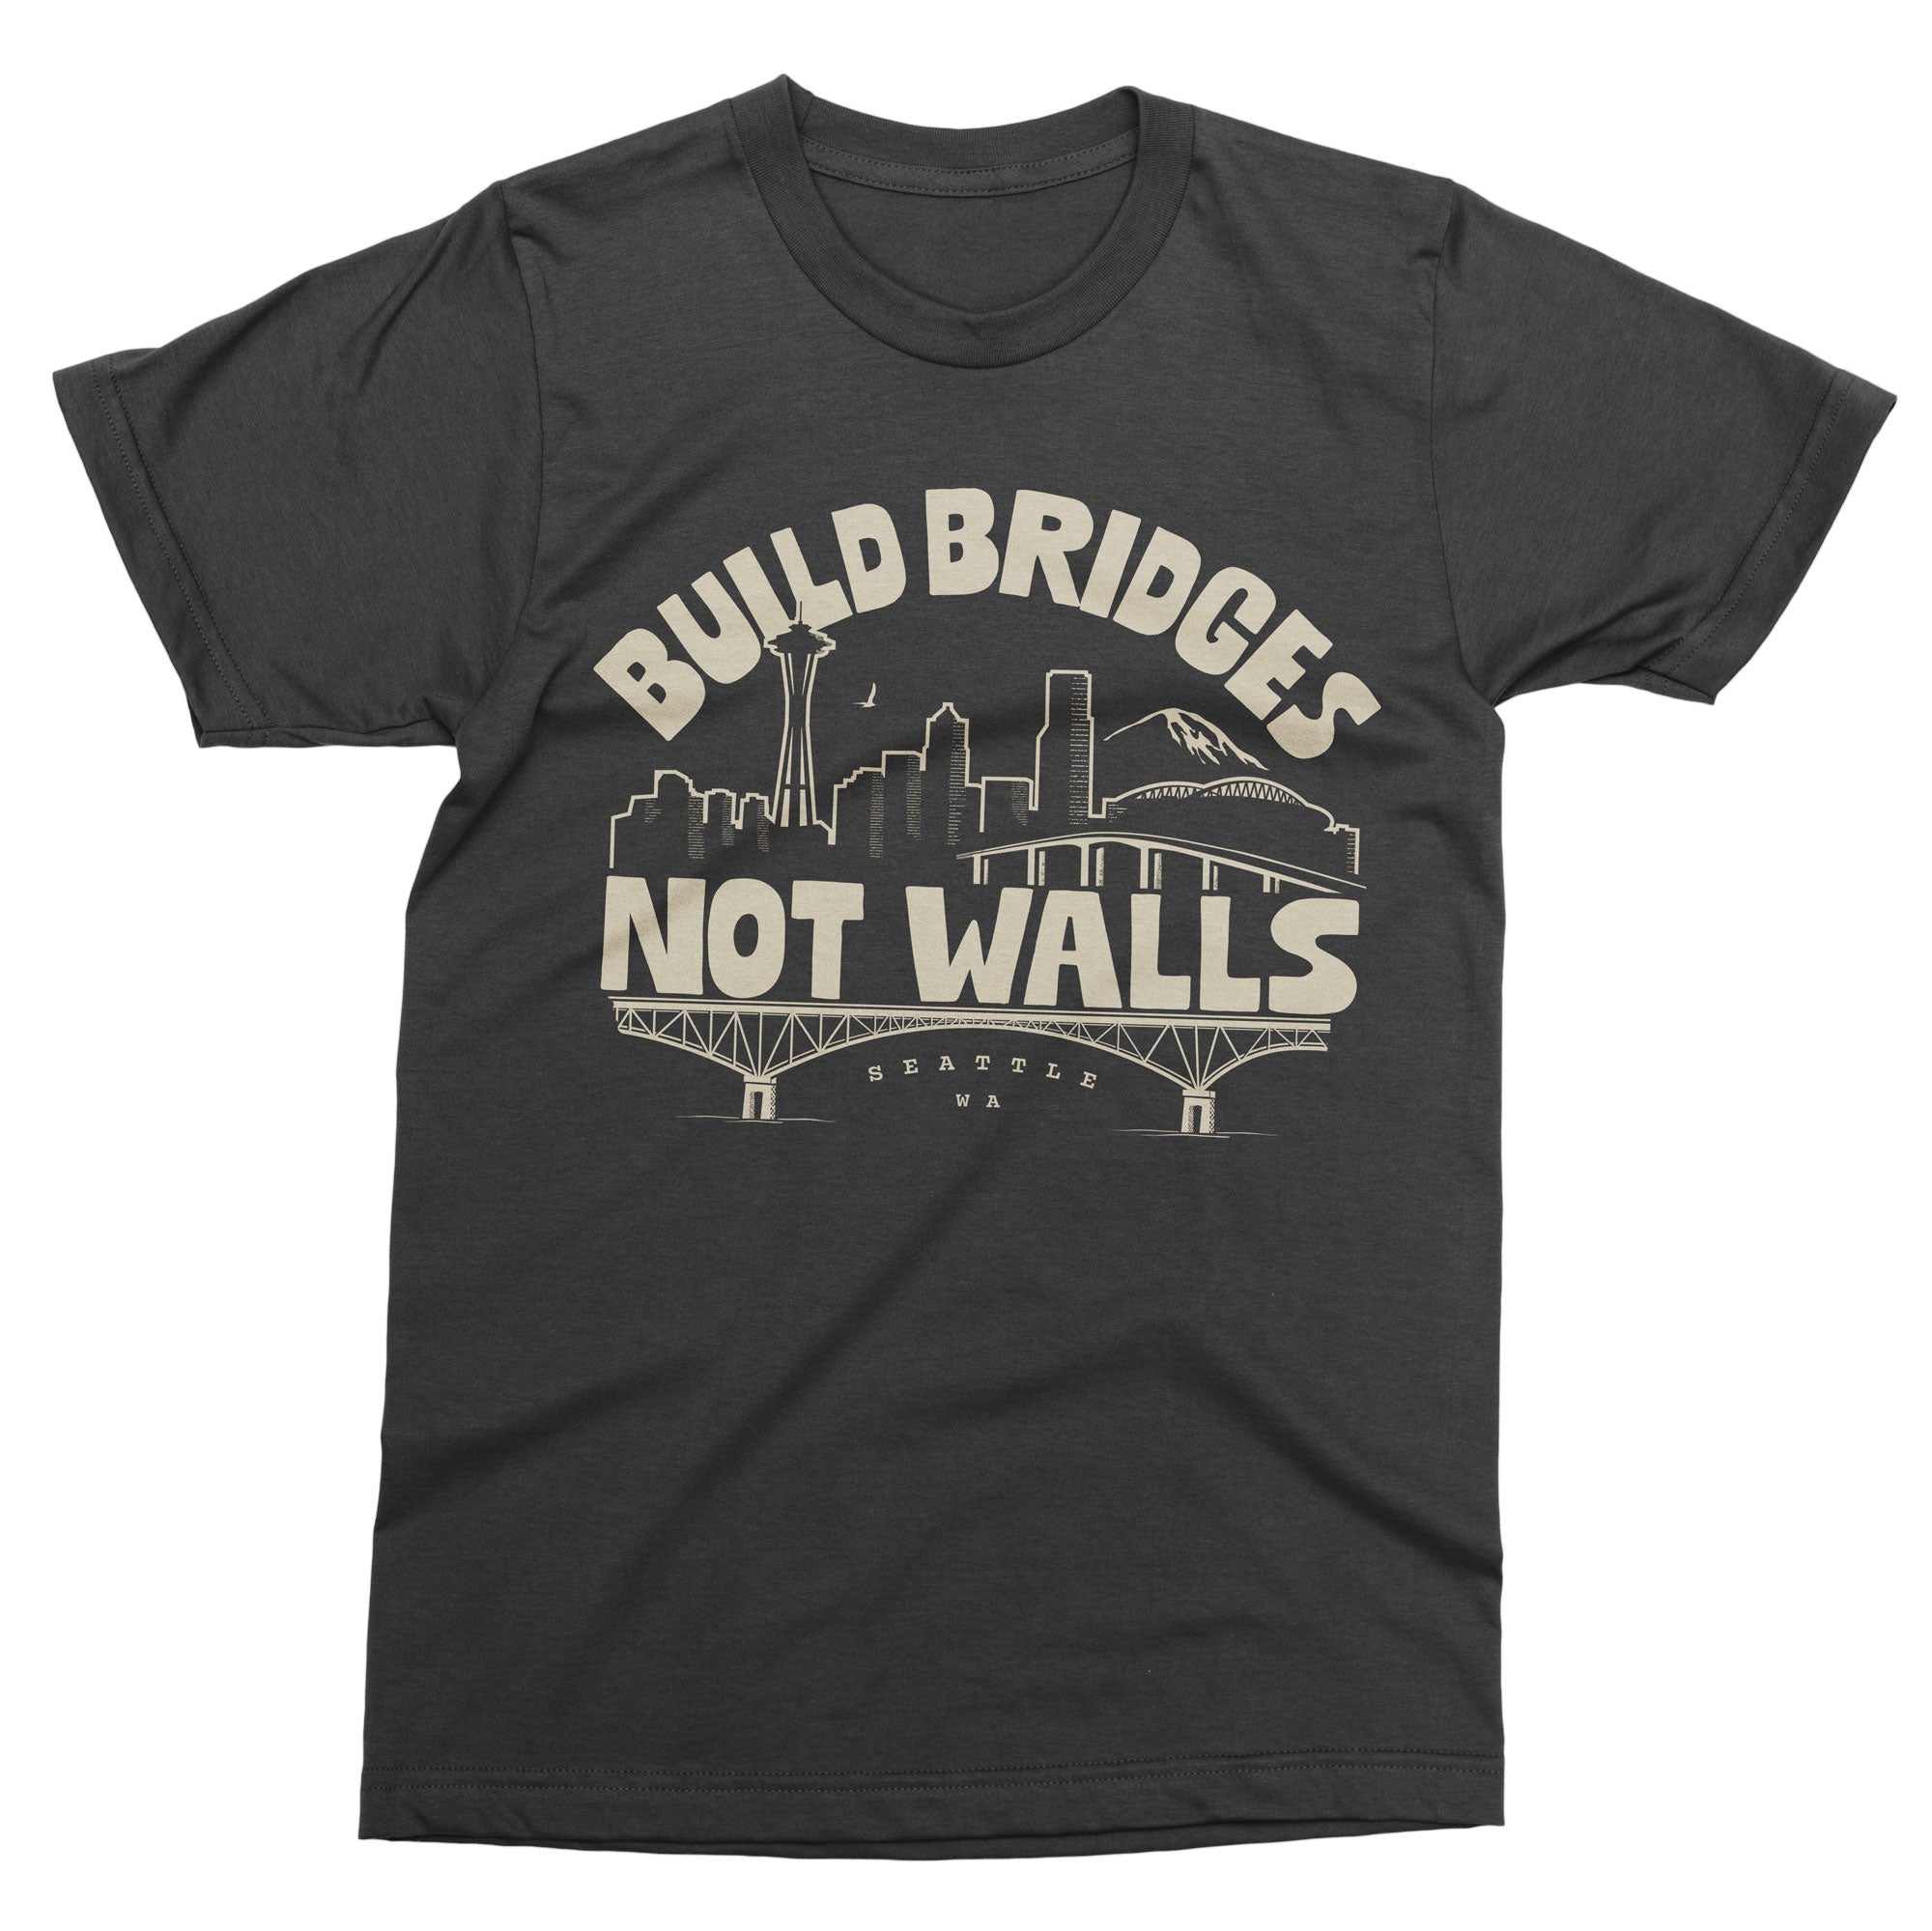 Build Bridges Not Walls tshirt - Viaduct